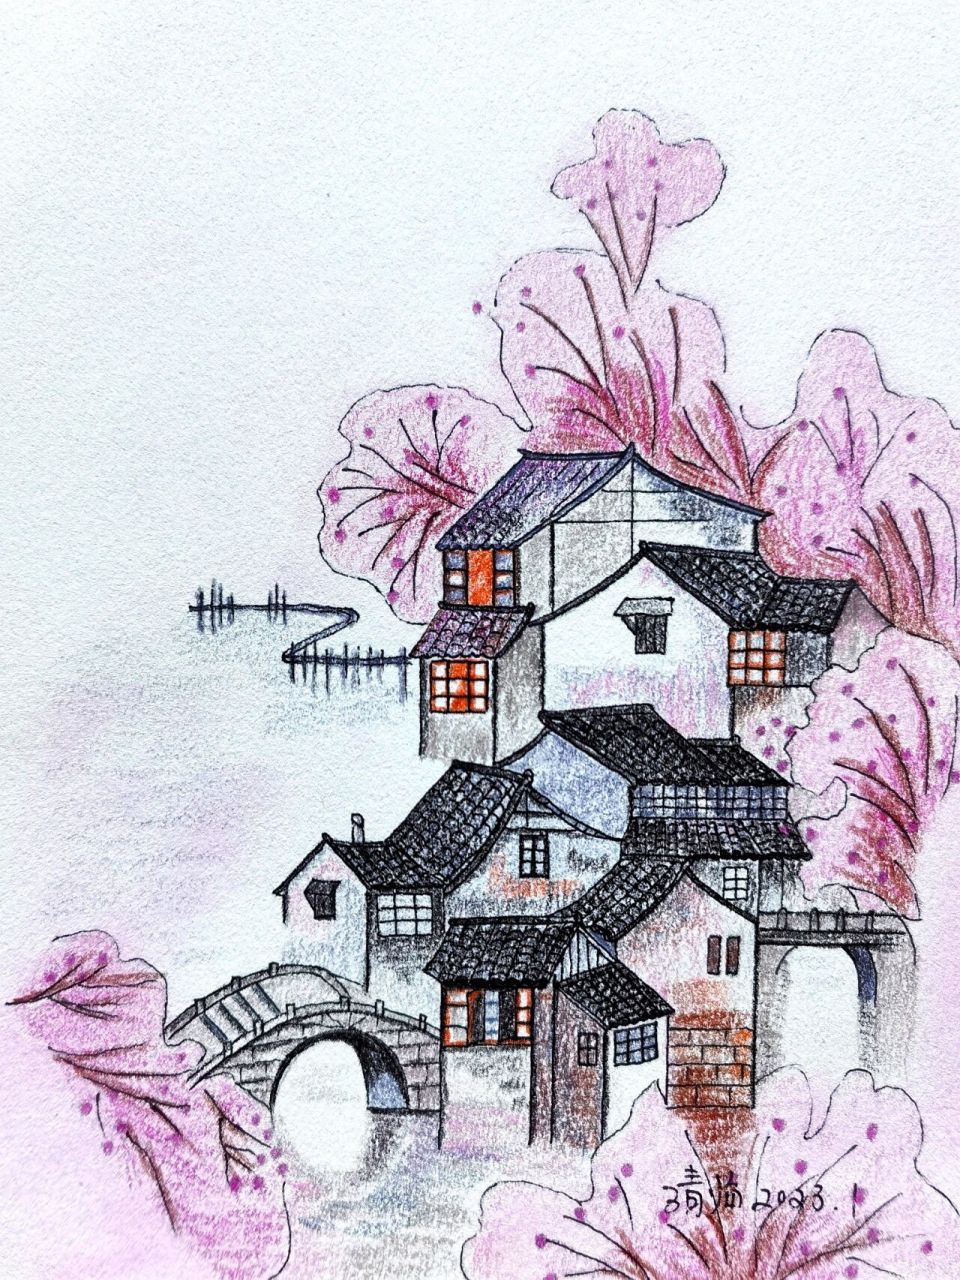 彩铅临摹:桃花开的时候,江南就是粉色的 时间煮雨,岁月缝花,以欢喜之